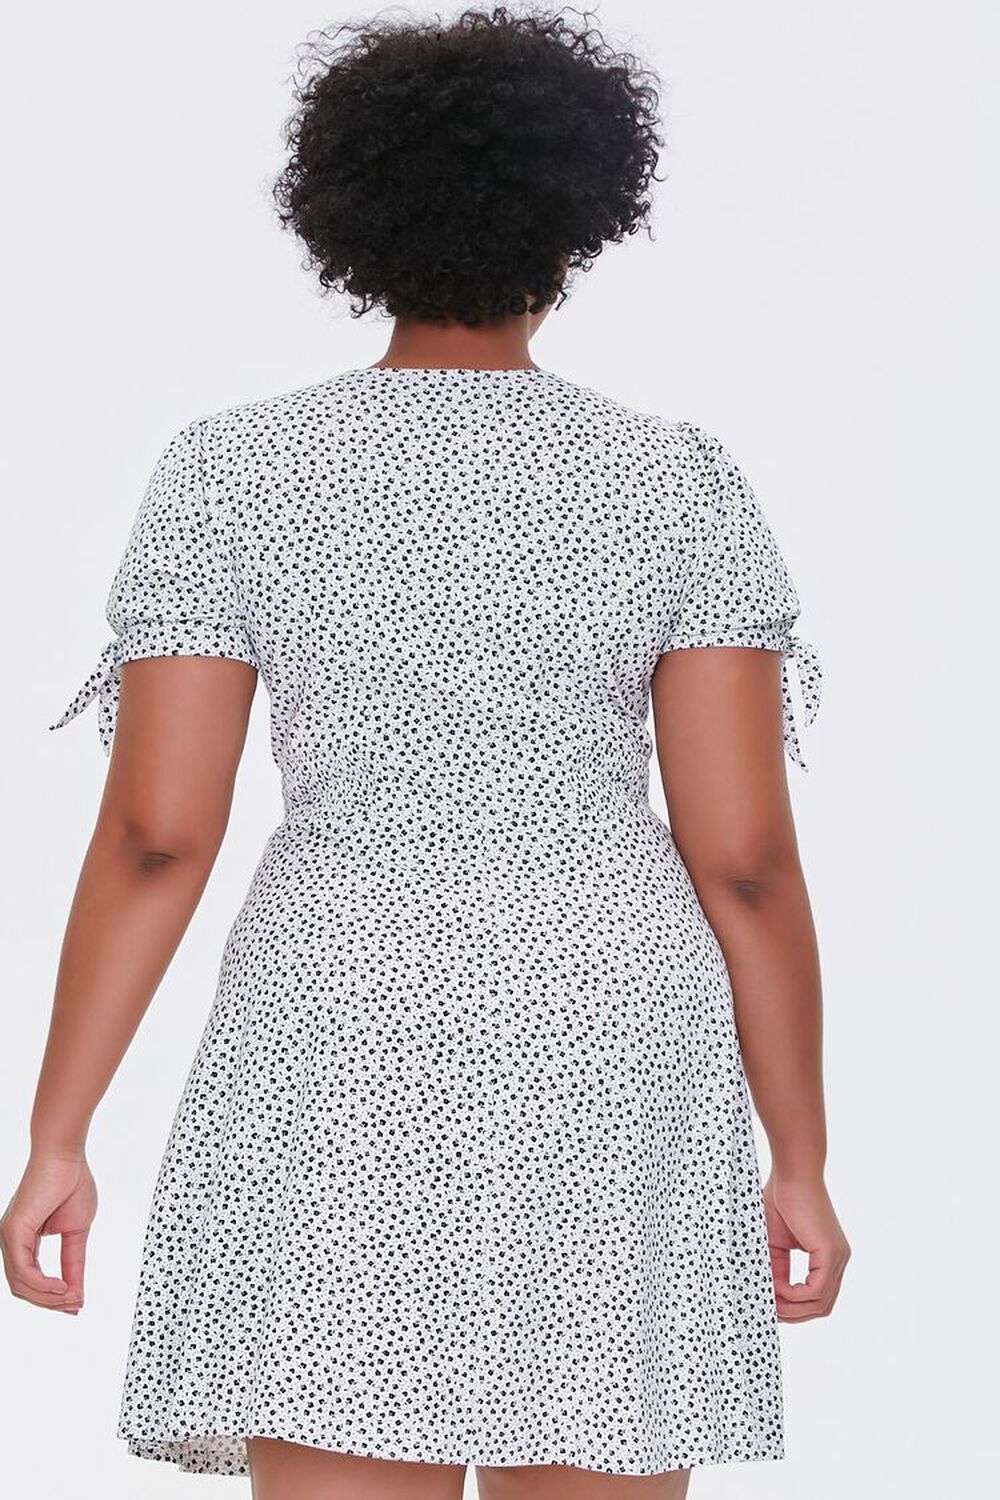 BLACK/WHITE Plus Size Polka Dot Dress, image 3